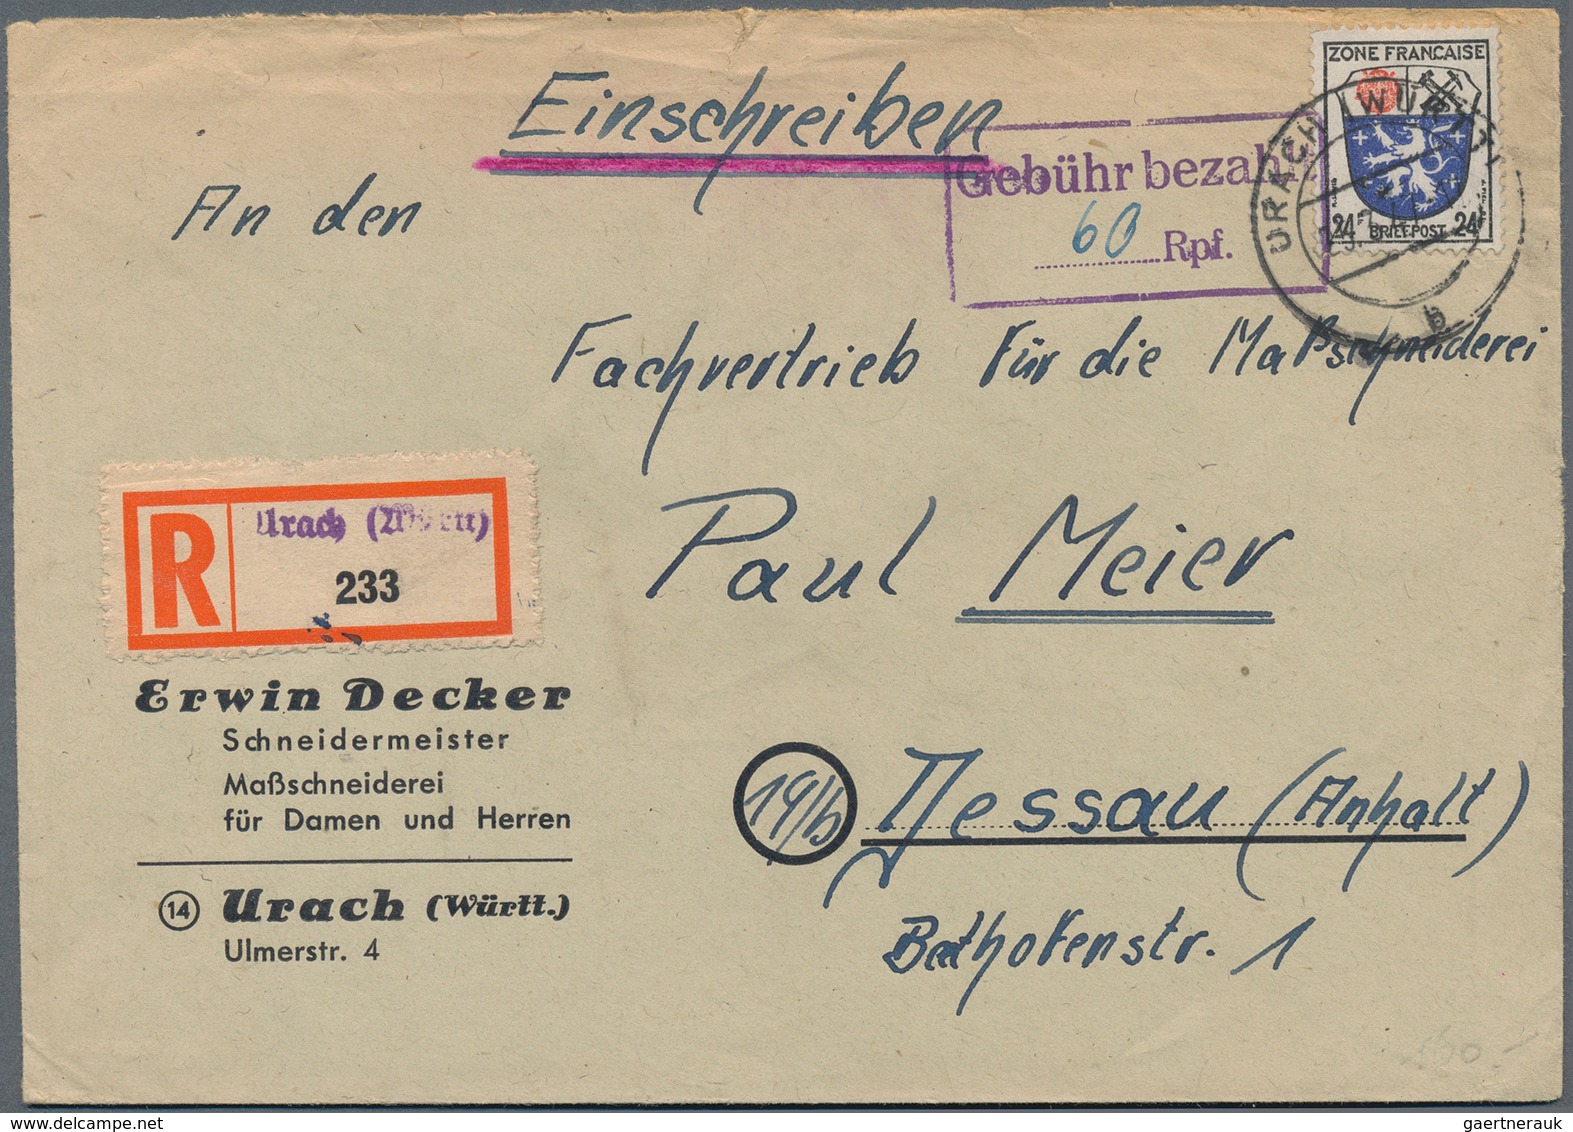 29946 Deutschland: 1845/1949 ca., interessanter Posten mit ca.400 Belegen in drei Briefalben, dabei Materi